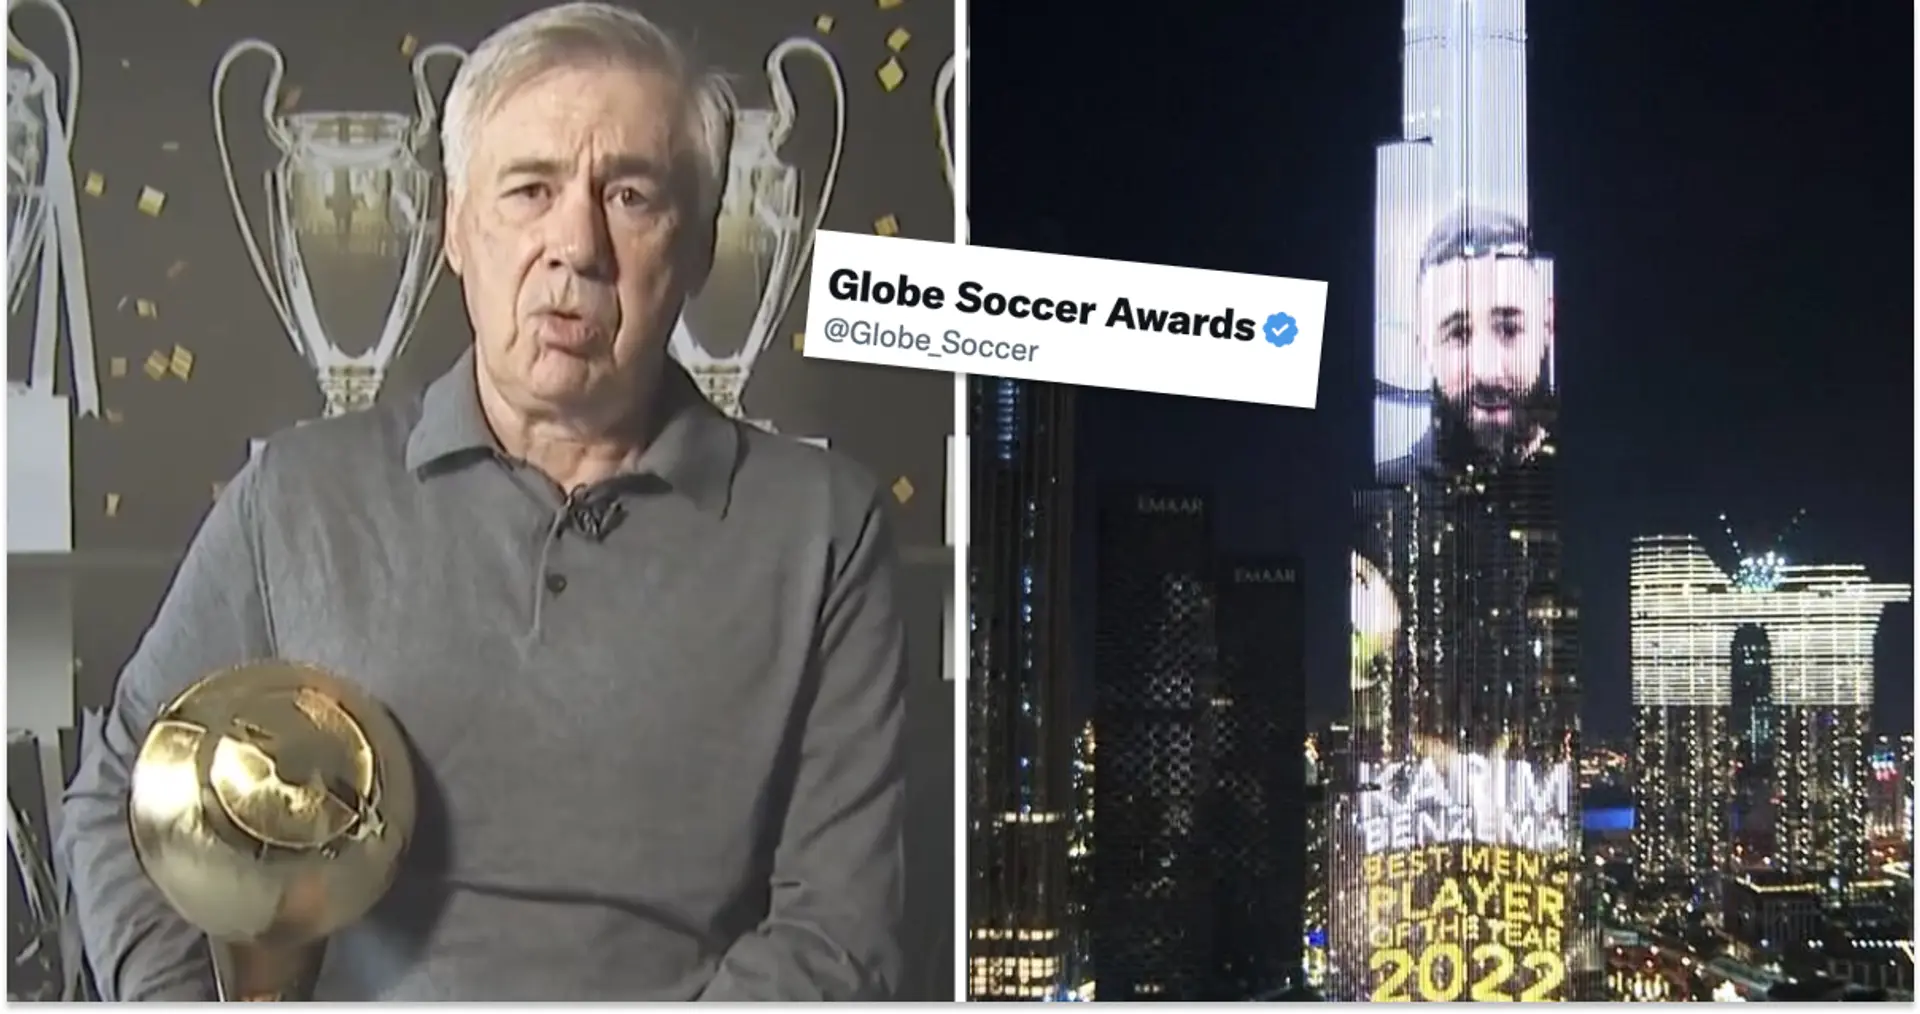 Le Real Madrid nommé meilleur club de l'année et plus encore : les Globe Soccer Awards dans leur intégralité